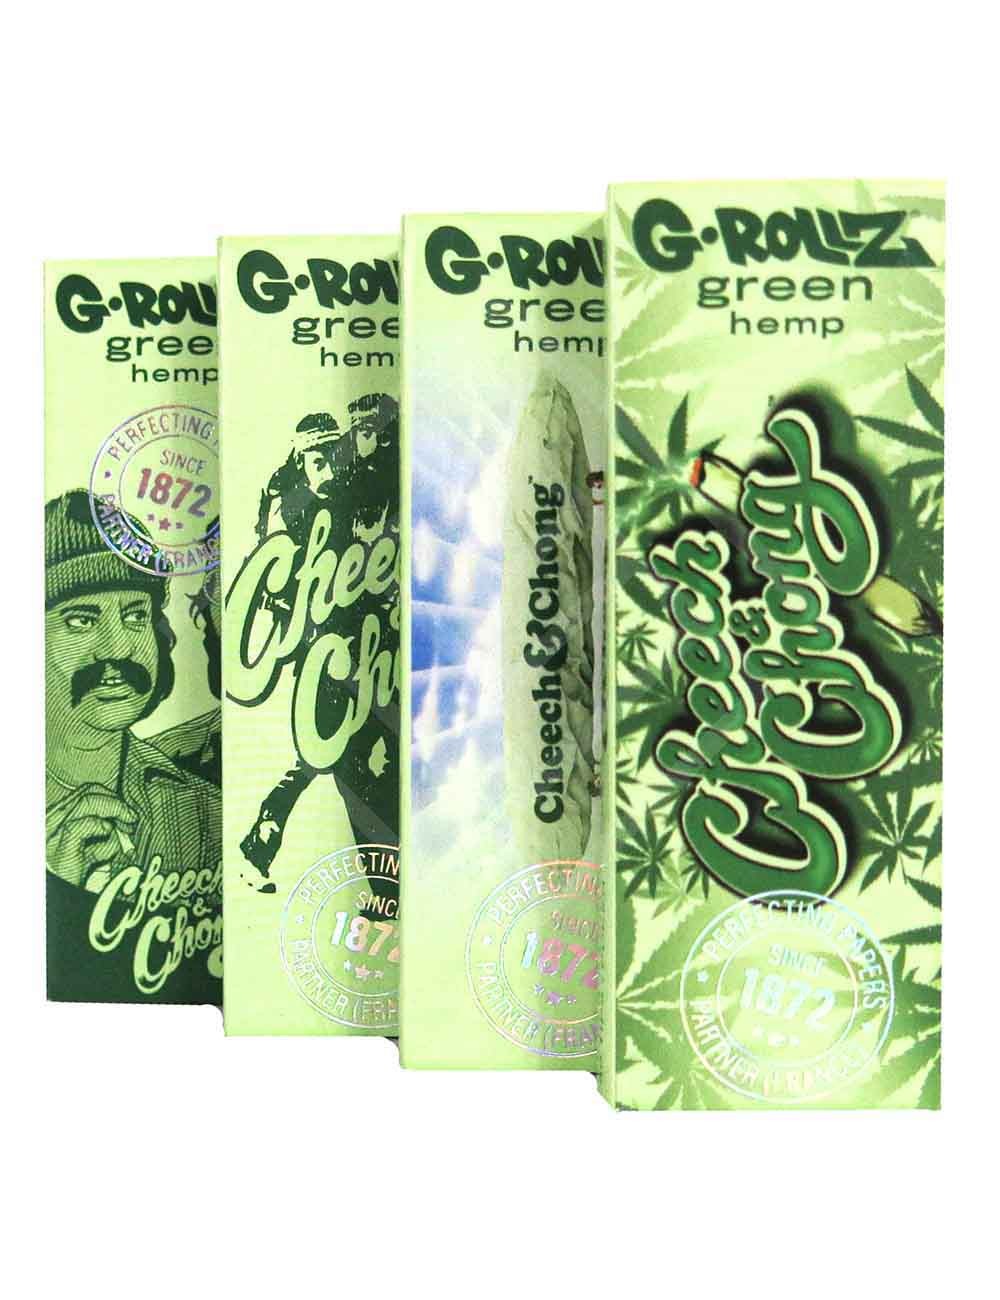 G-ROLLZ | Cheech & Chong(TM) - Organic Green Hemp - 50 '1¼' Papers + Tips